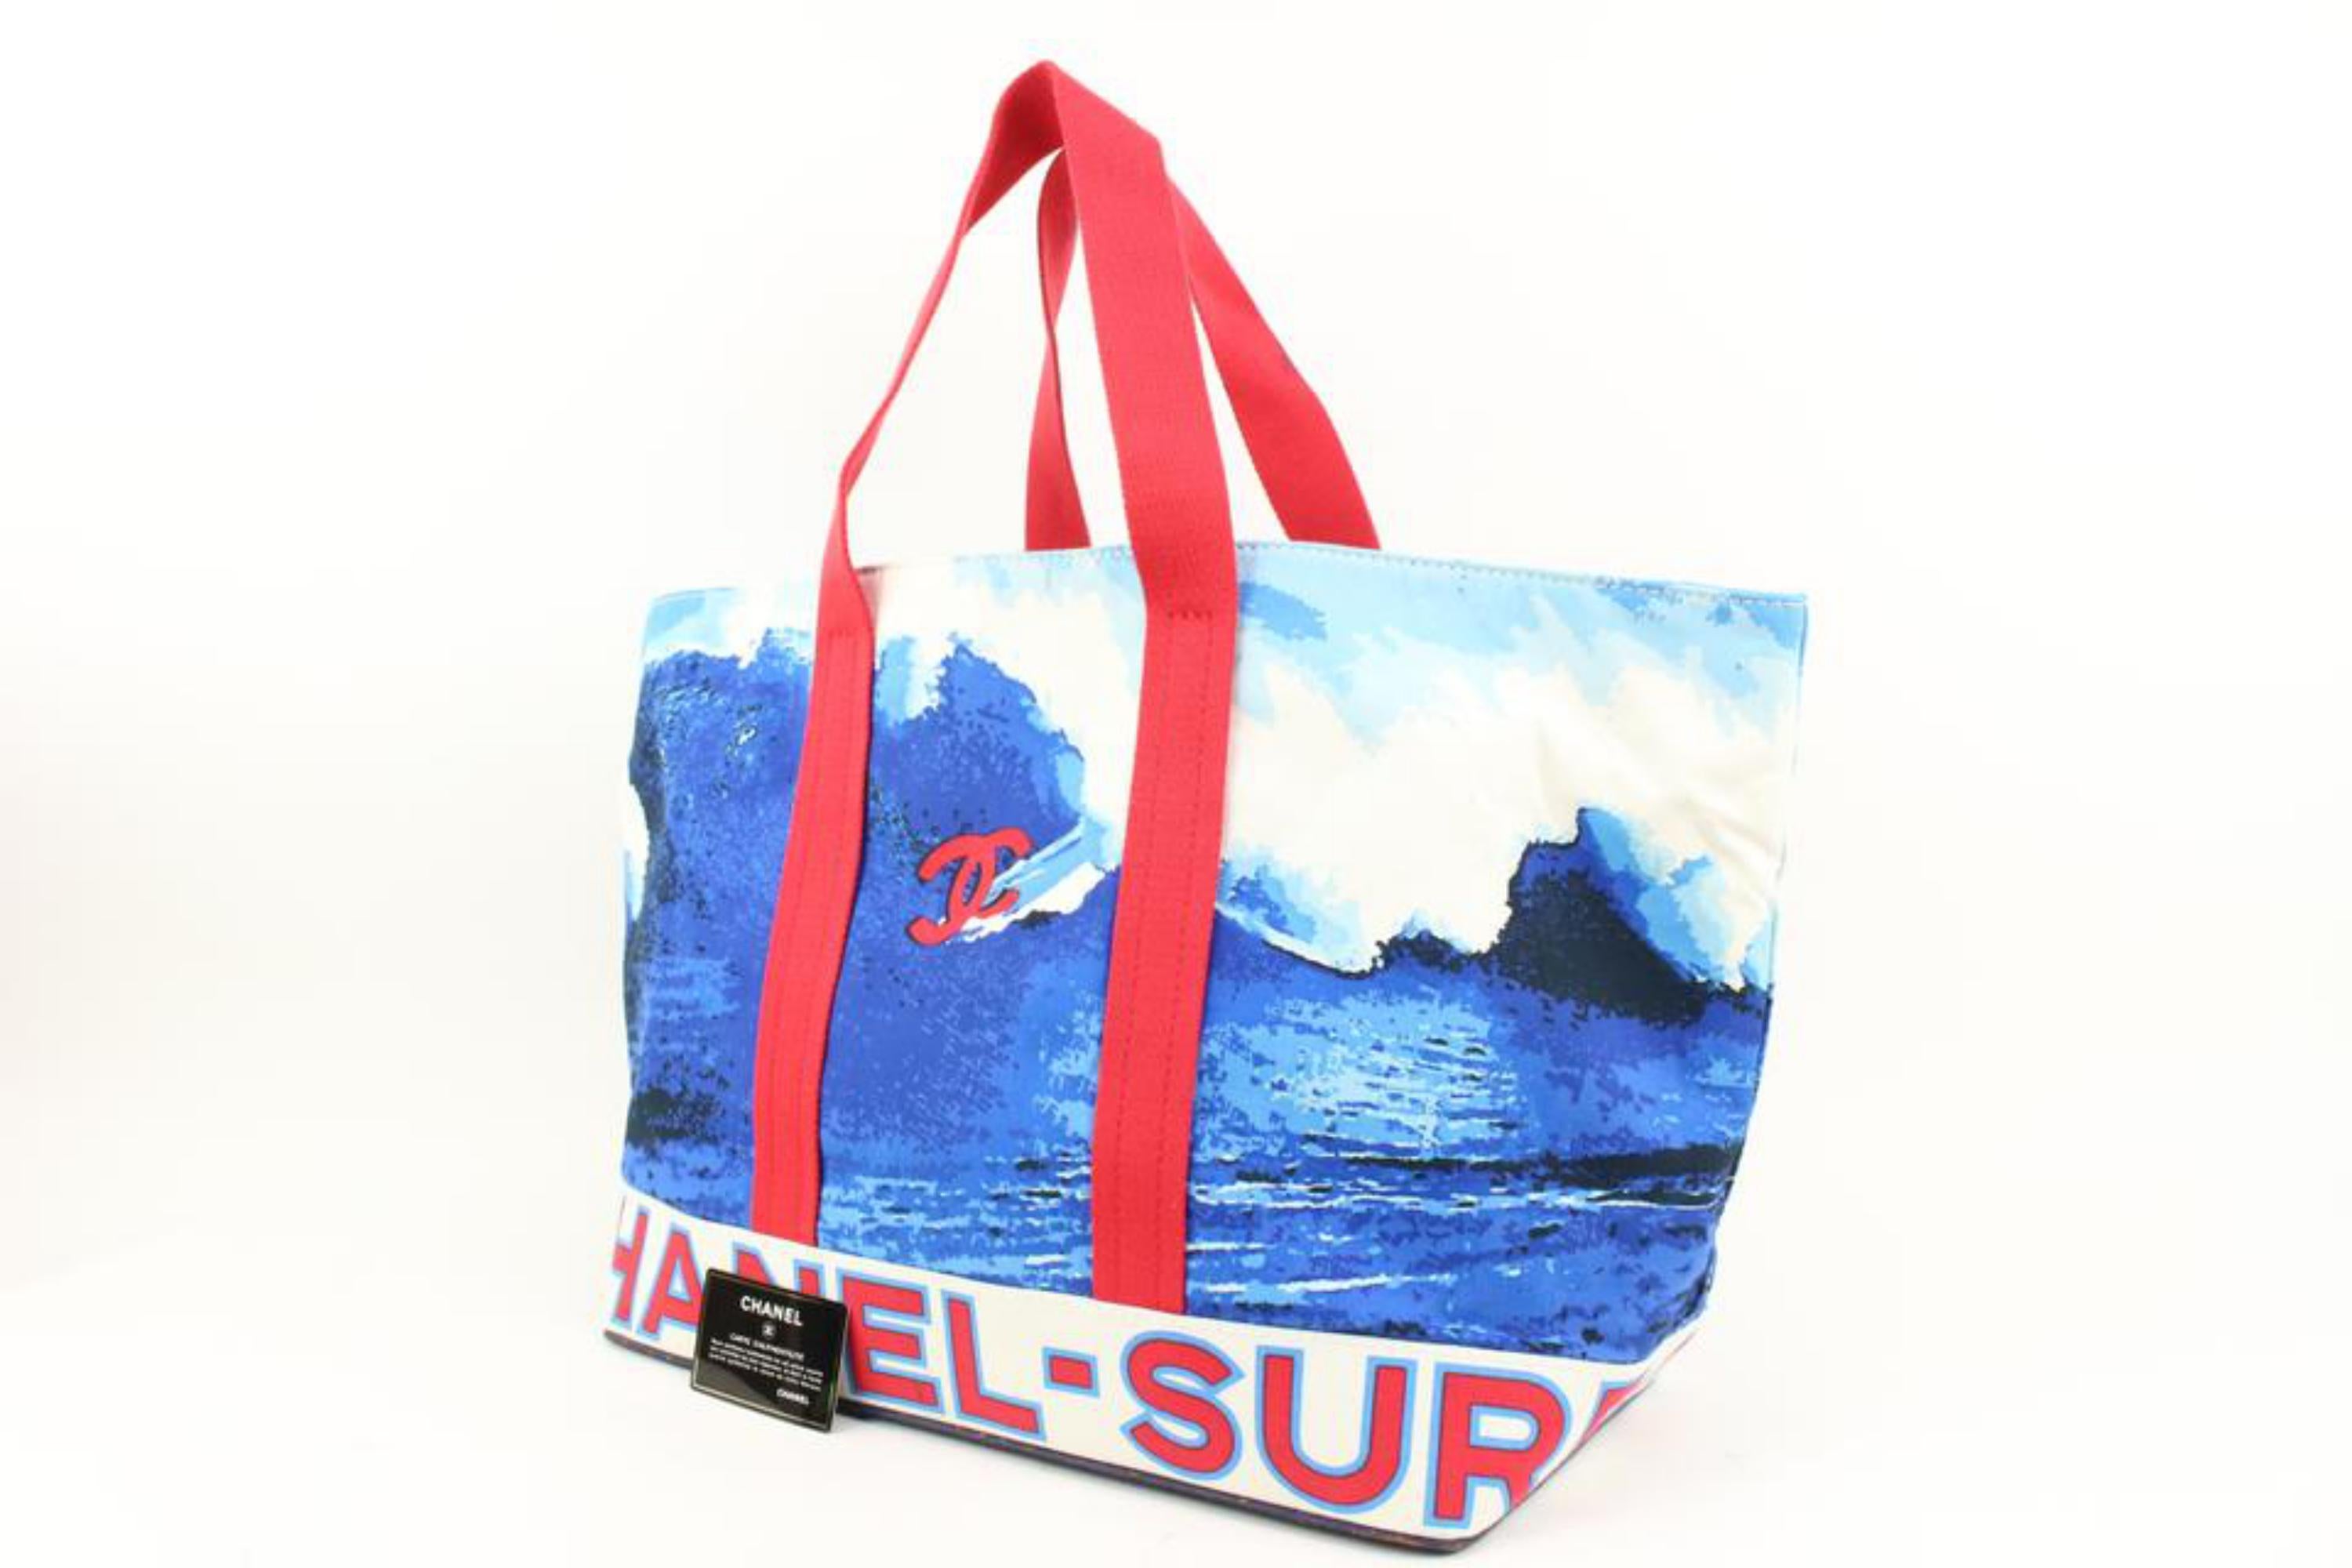 Chanel XL Blau x Rot Wave Surf Beach Tote Bag 89ck39s
Datum Code/Seriennummer: 7226651
Hergestellt in: Frankreich
Maße: Länge:  25